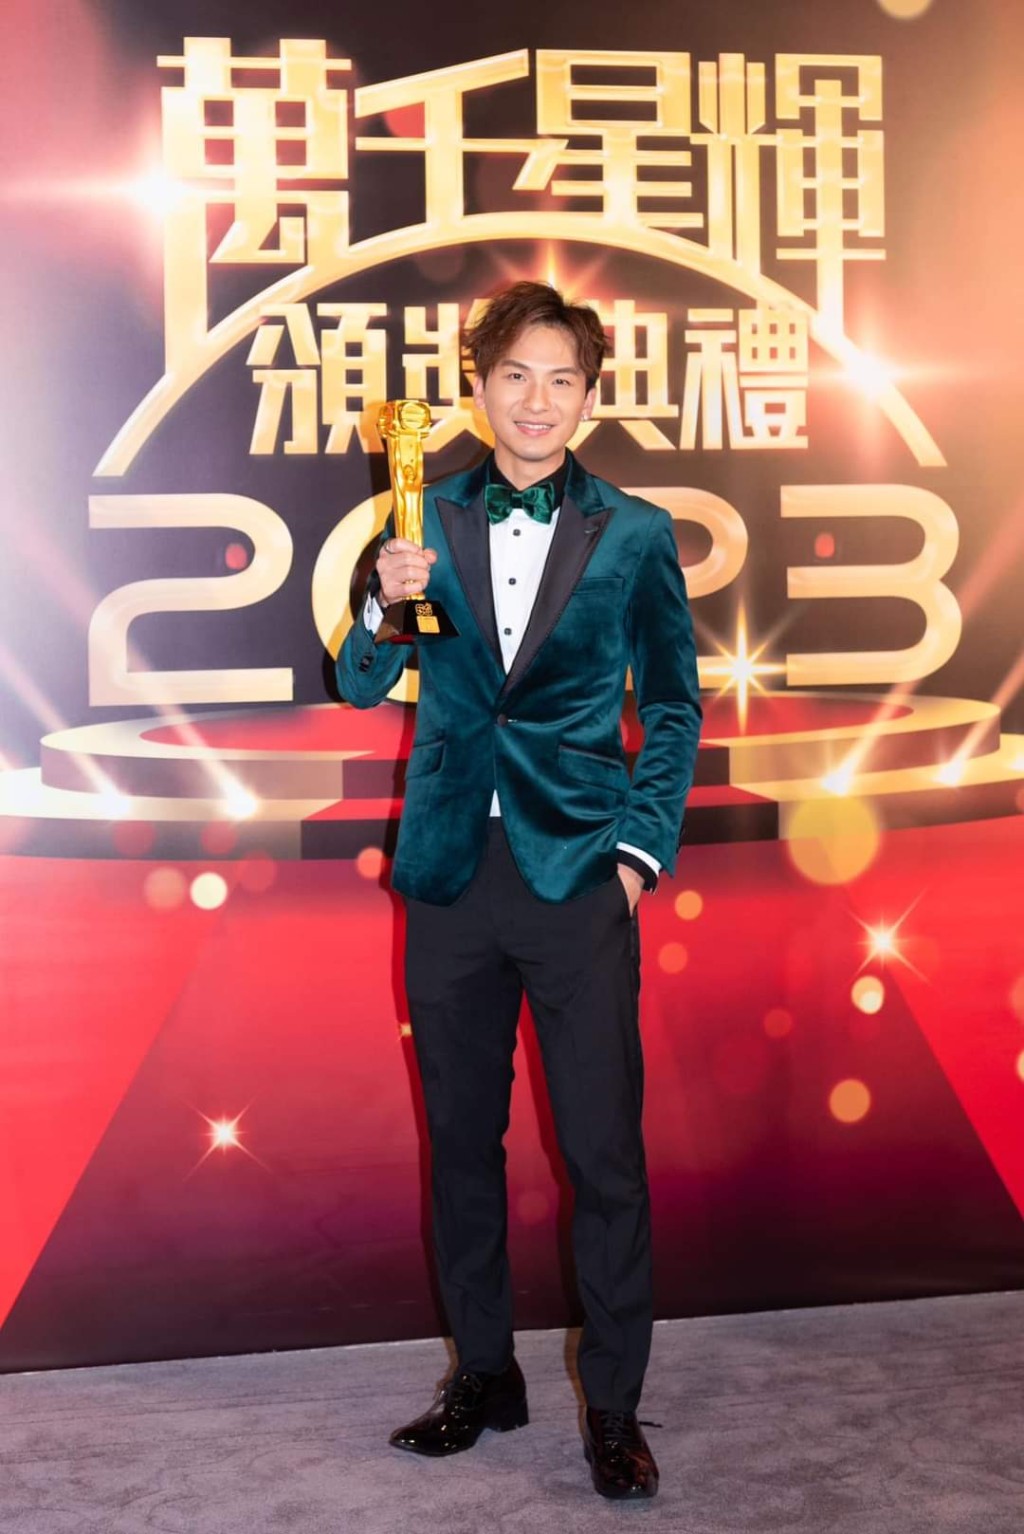 吉吉封王的《中年好声音》夺台庆颁奖礼「最佳综艺节目」奖。